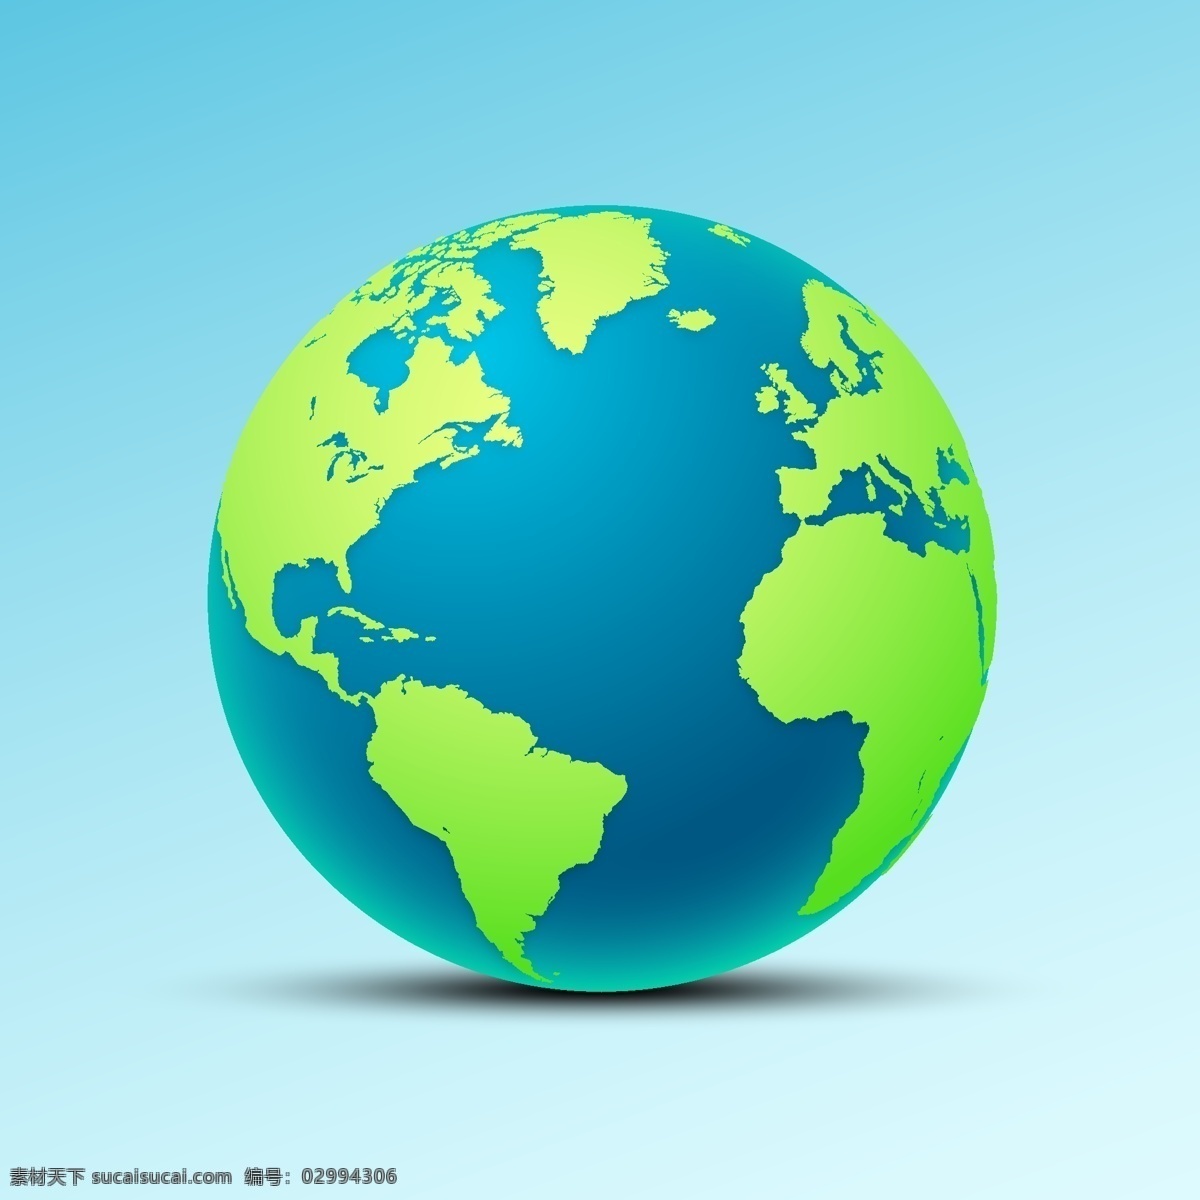 地球背景 地球仪 蓝色地球 科技地球 蓝色地球展板 绿色地球背景 保护地球 手捧地球 地球科技 网络地球 智慧地球 地球线条 地球运动 地球海报 地球画册 地球展板 地球精神 地球宣传 地球素材 地球模板 地球村 环保地球 绿色地球 地球环境 自然环境 宇宙天体 矢量地球 卡通设计